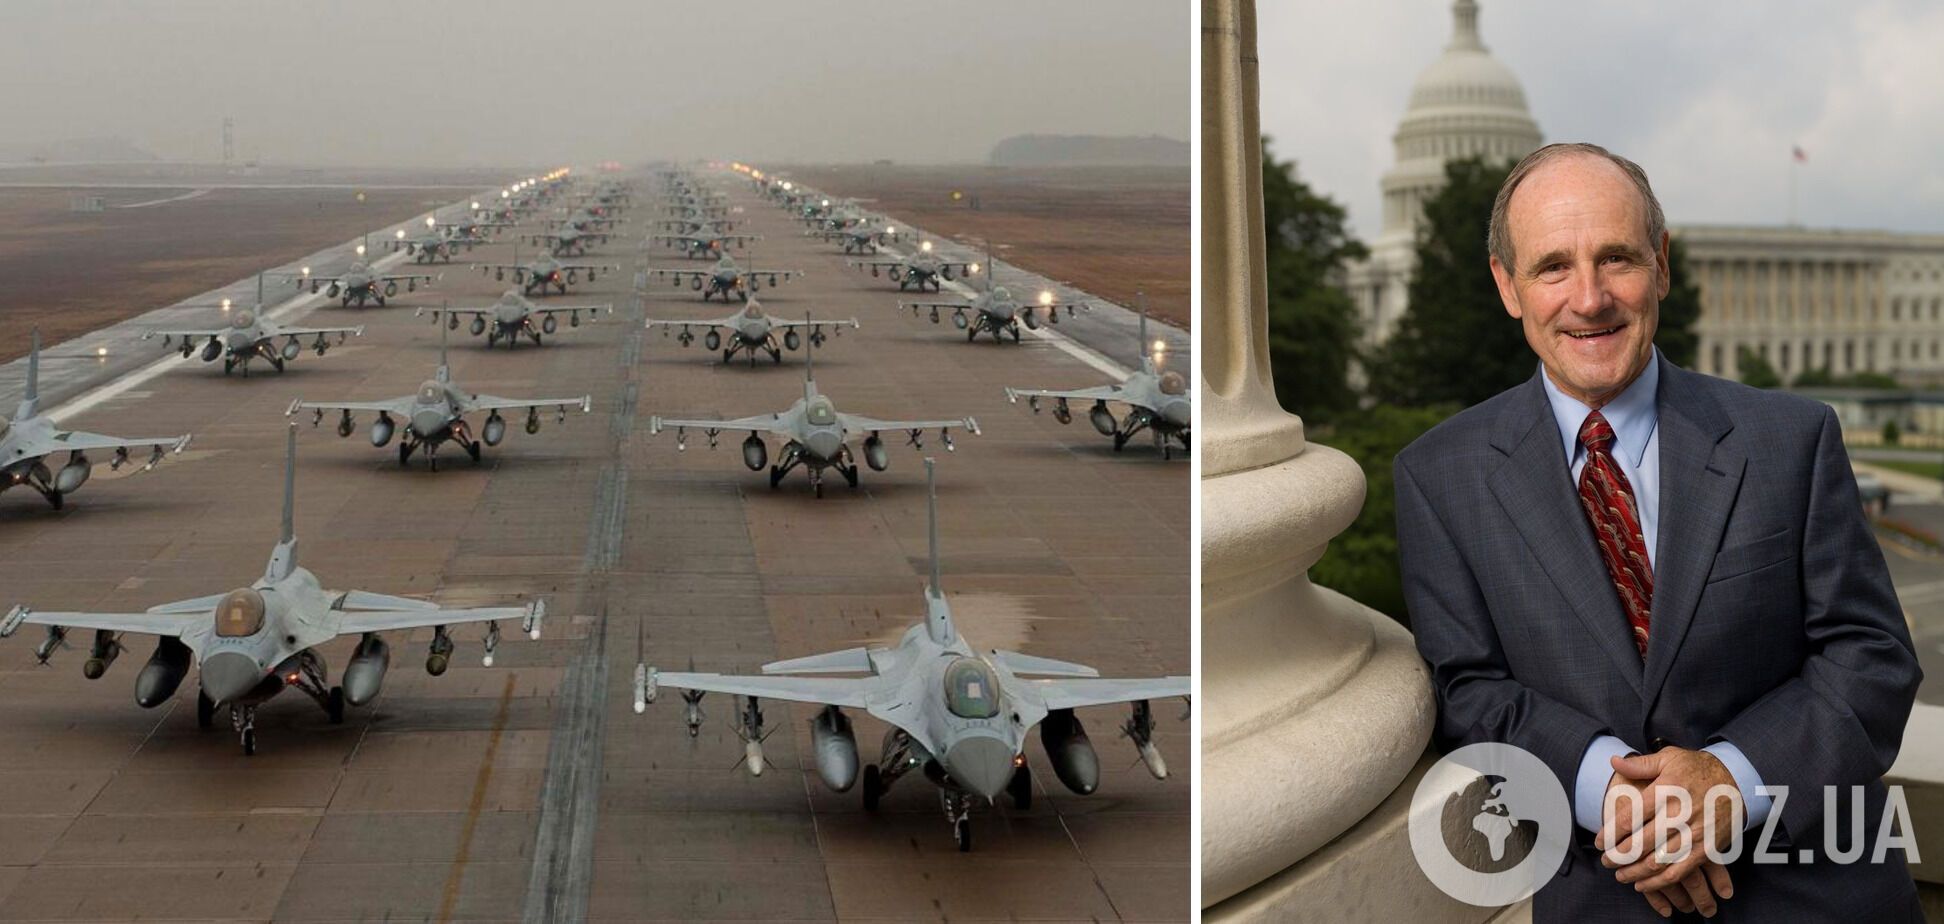 Cенатор-республиканец Джим Риш призвал предоставить Украине самолеты F-16